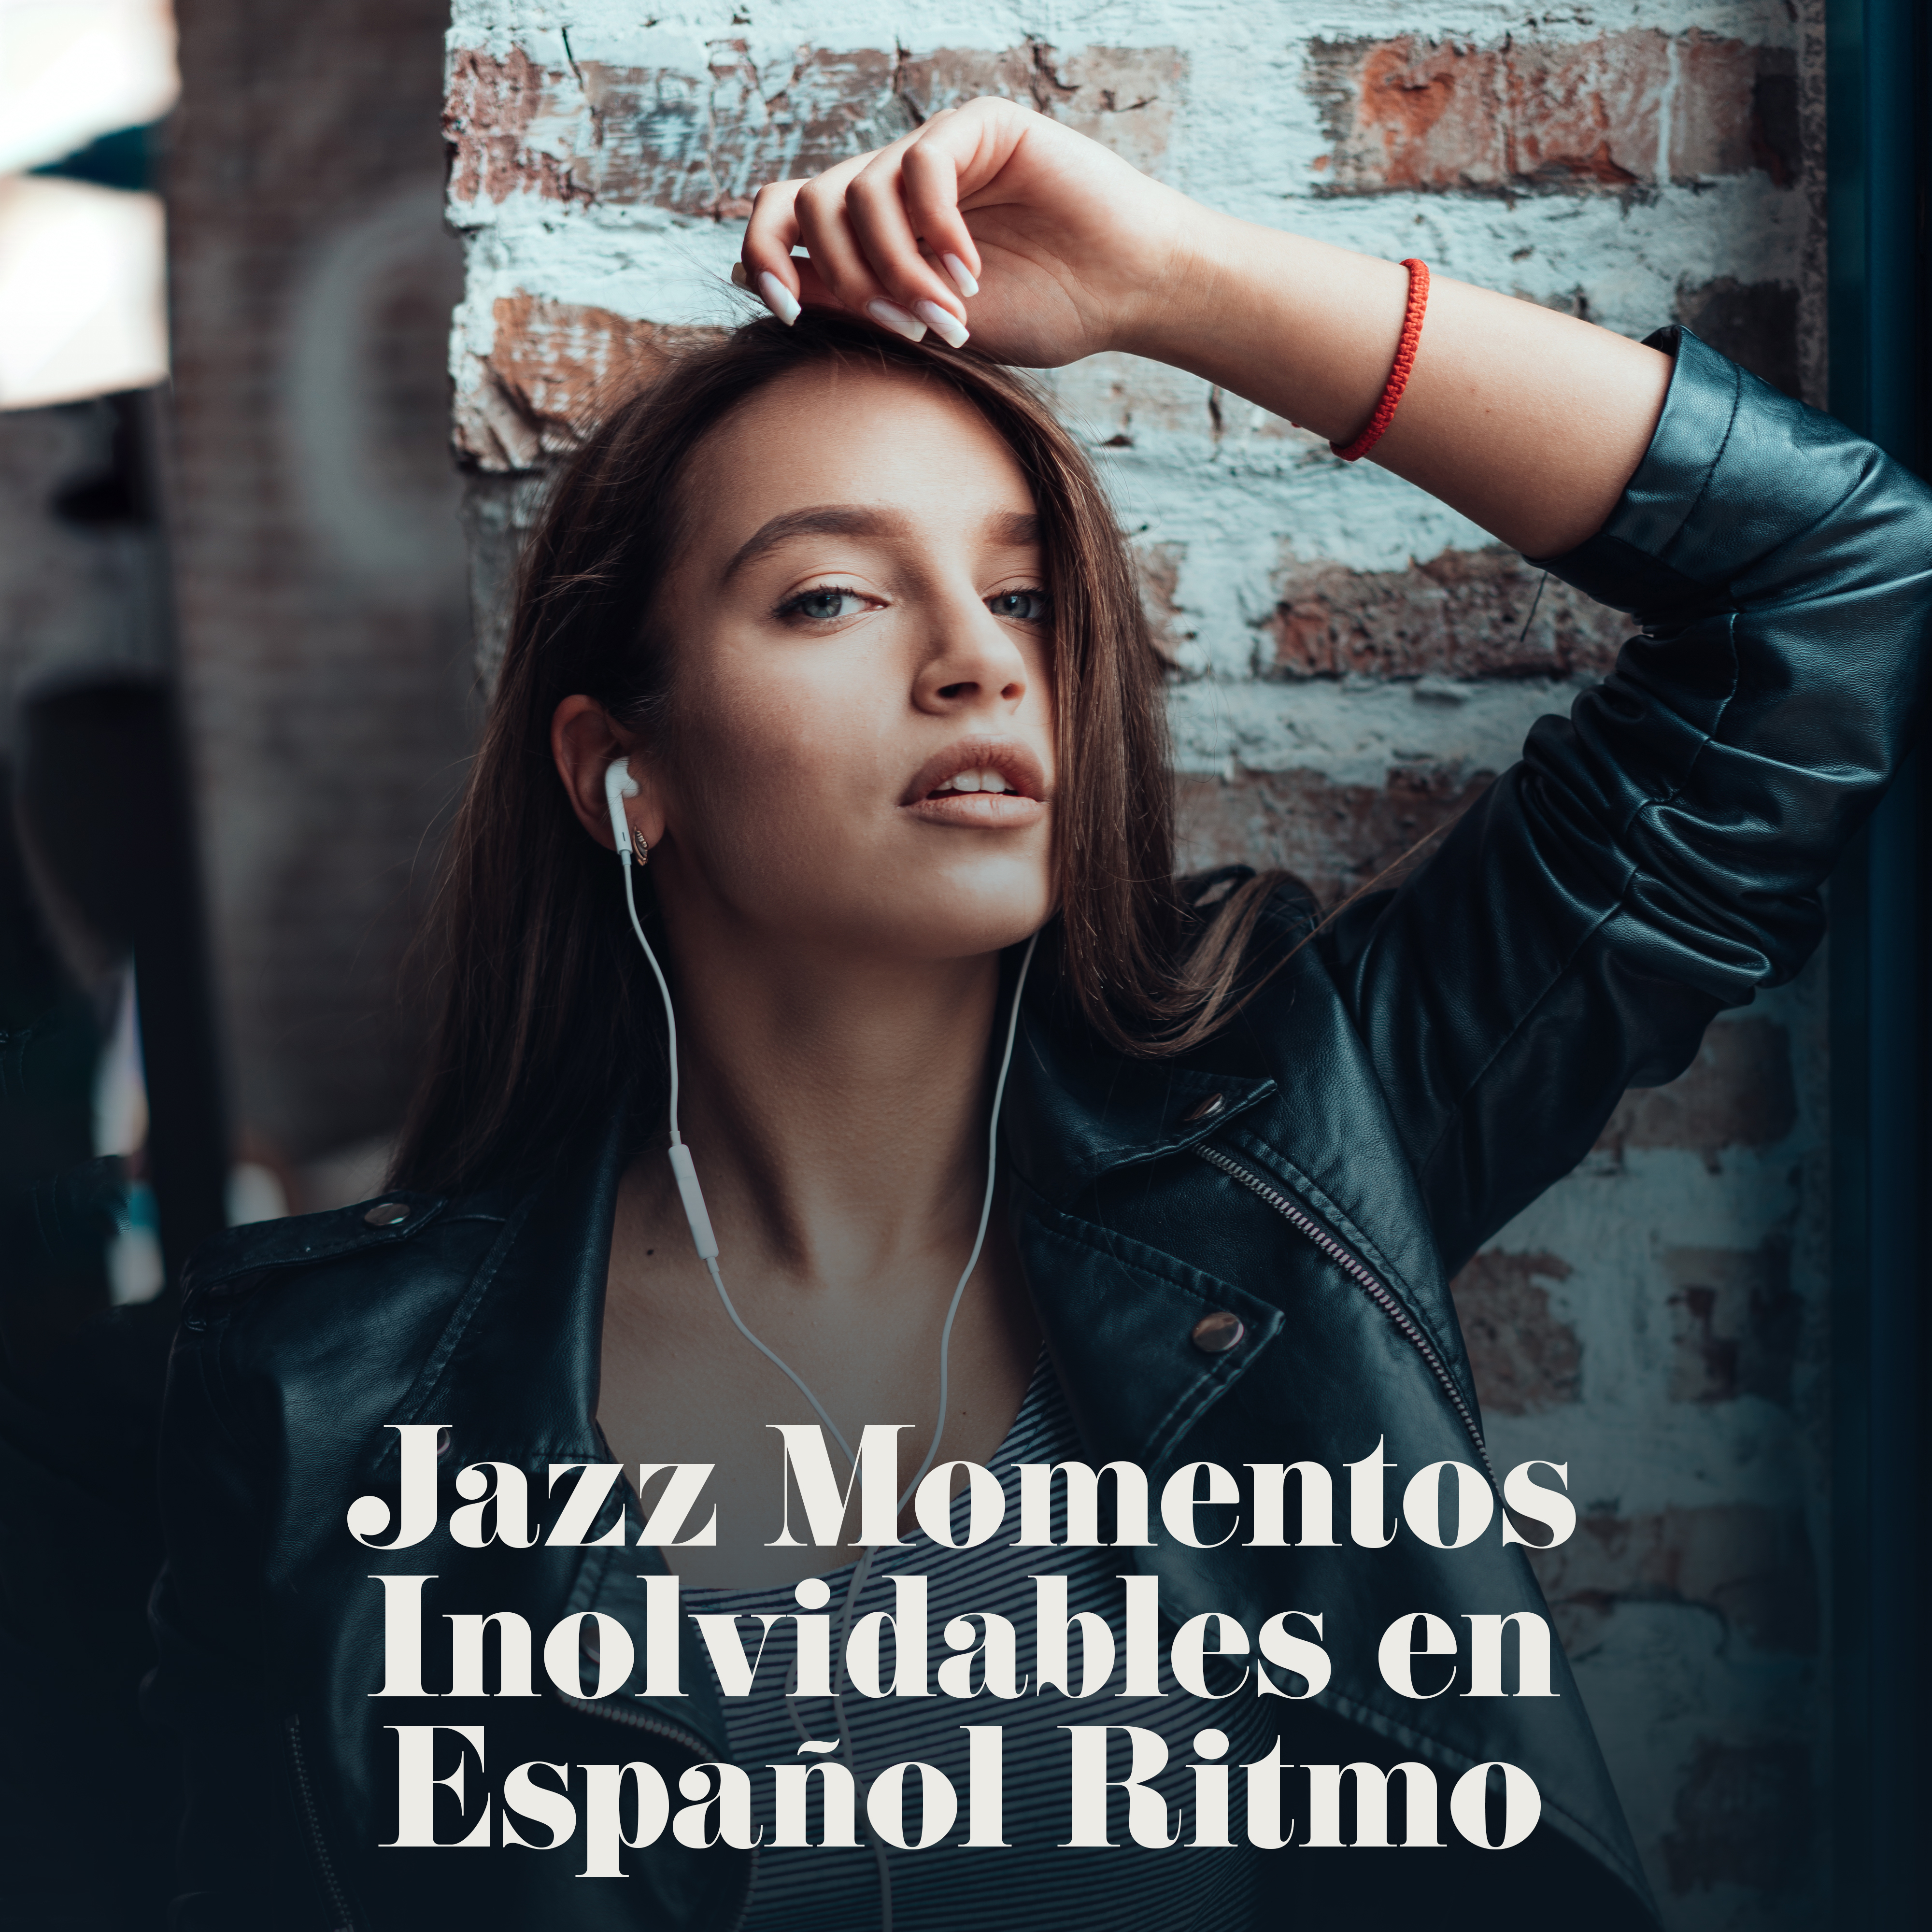 Jazz Momentos Inolvidables en Espa ol Ritmo